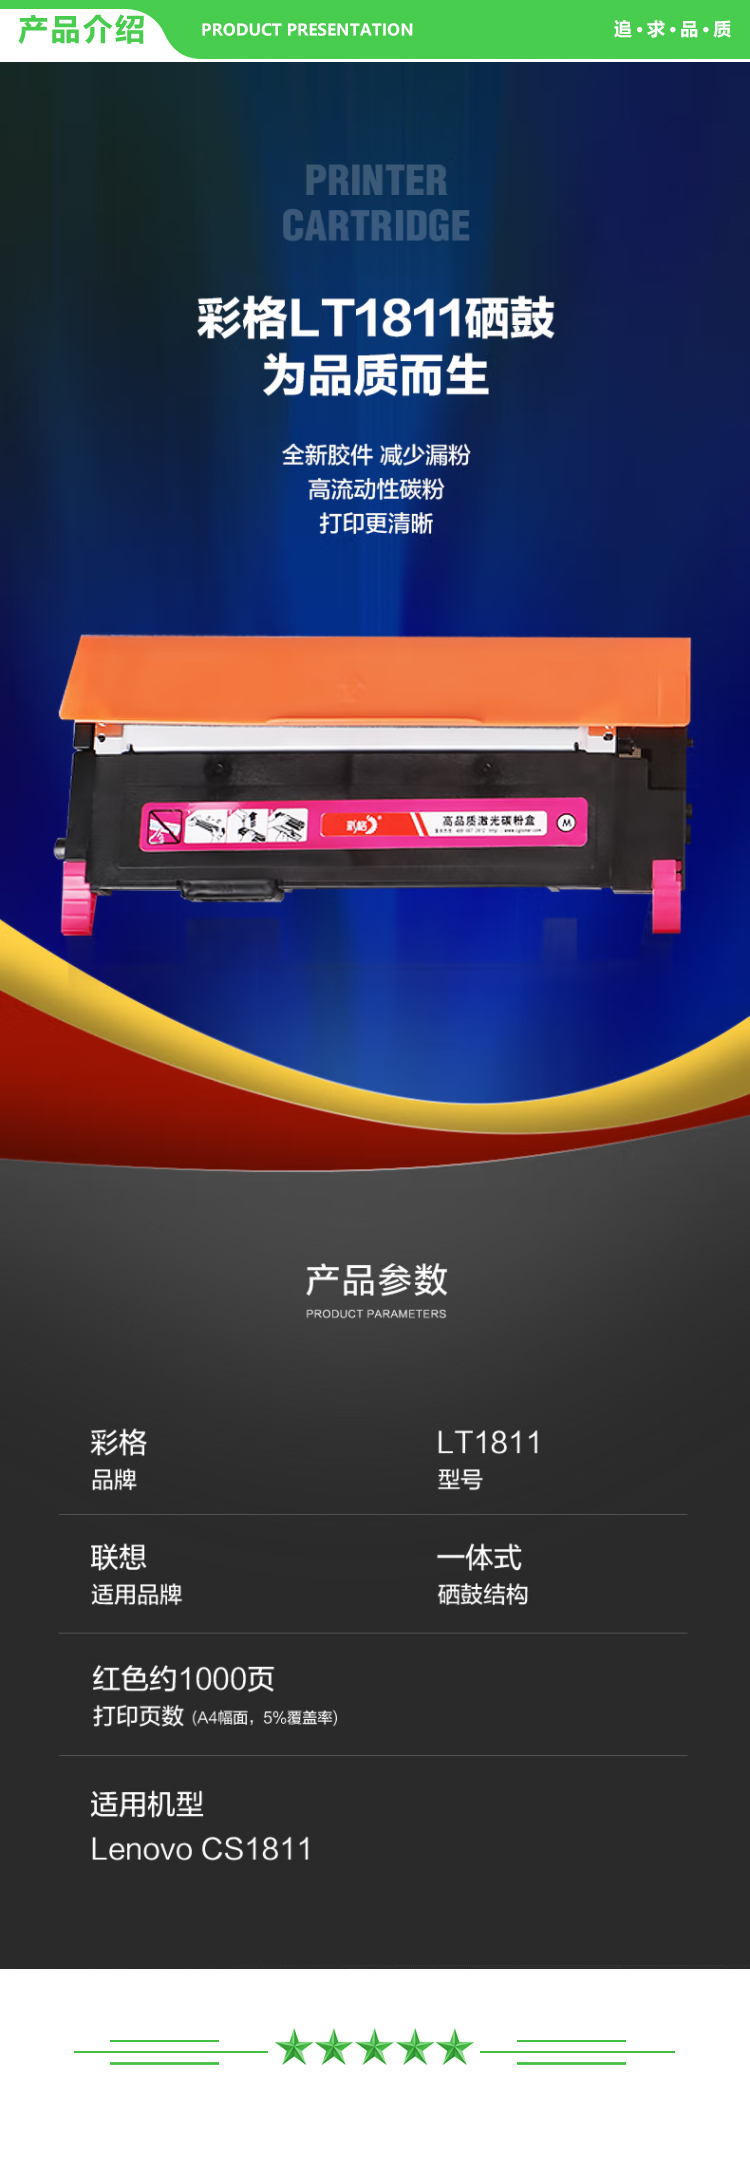 彩格 LT181 粉盒红色-带芯片 1000页 适用联想CS1811粉盒 LT1811墨盒 LT181k激光打印机硒鼓复印一体碳粉盒.jpg